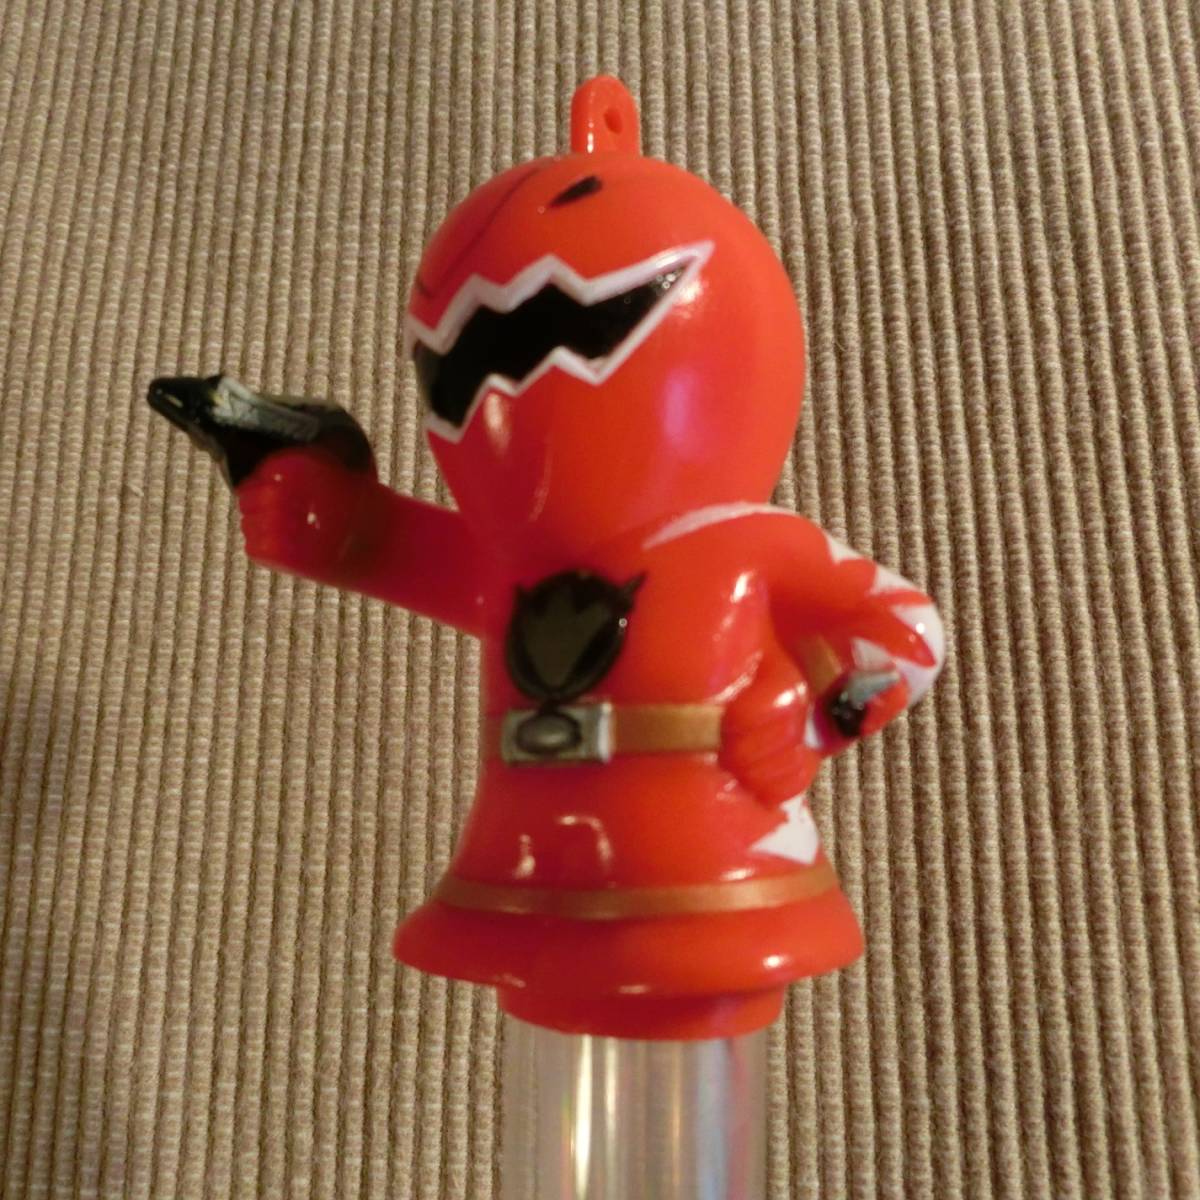  Kirakira светится герой палочка aba Ranger aba красный неиспользуемый товар редкость редкий игрушка фигурка свет мак восток .